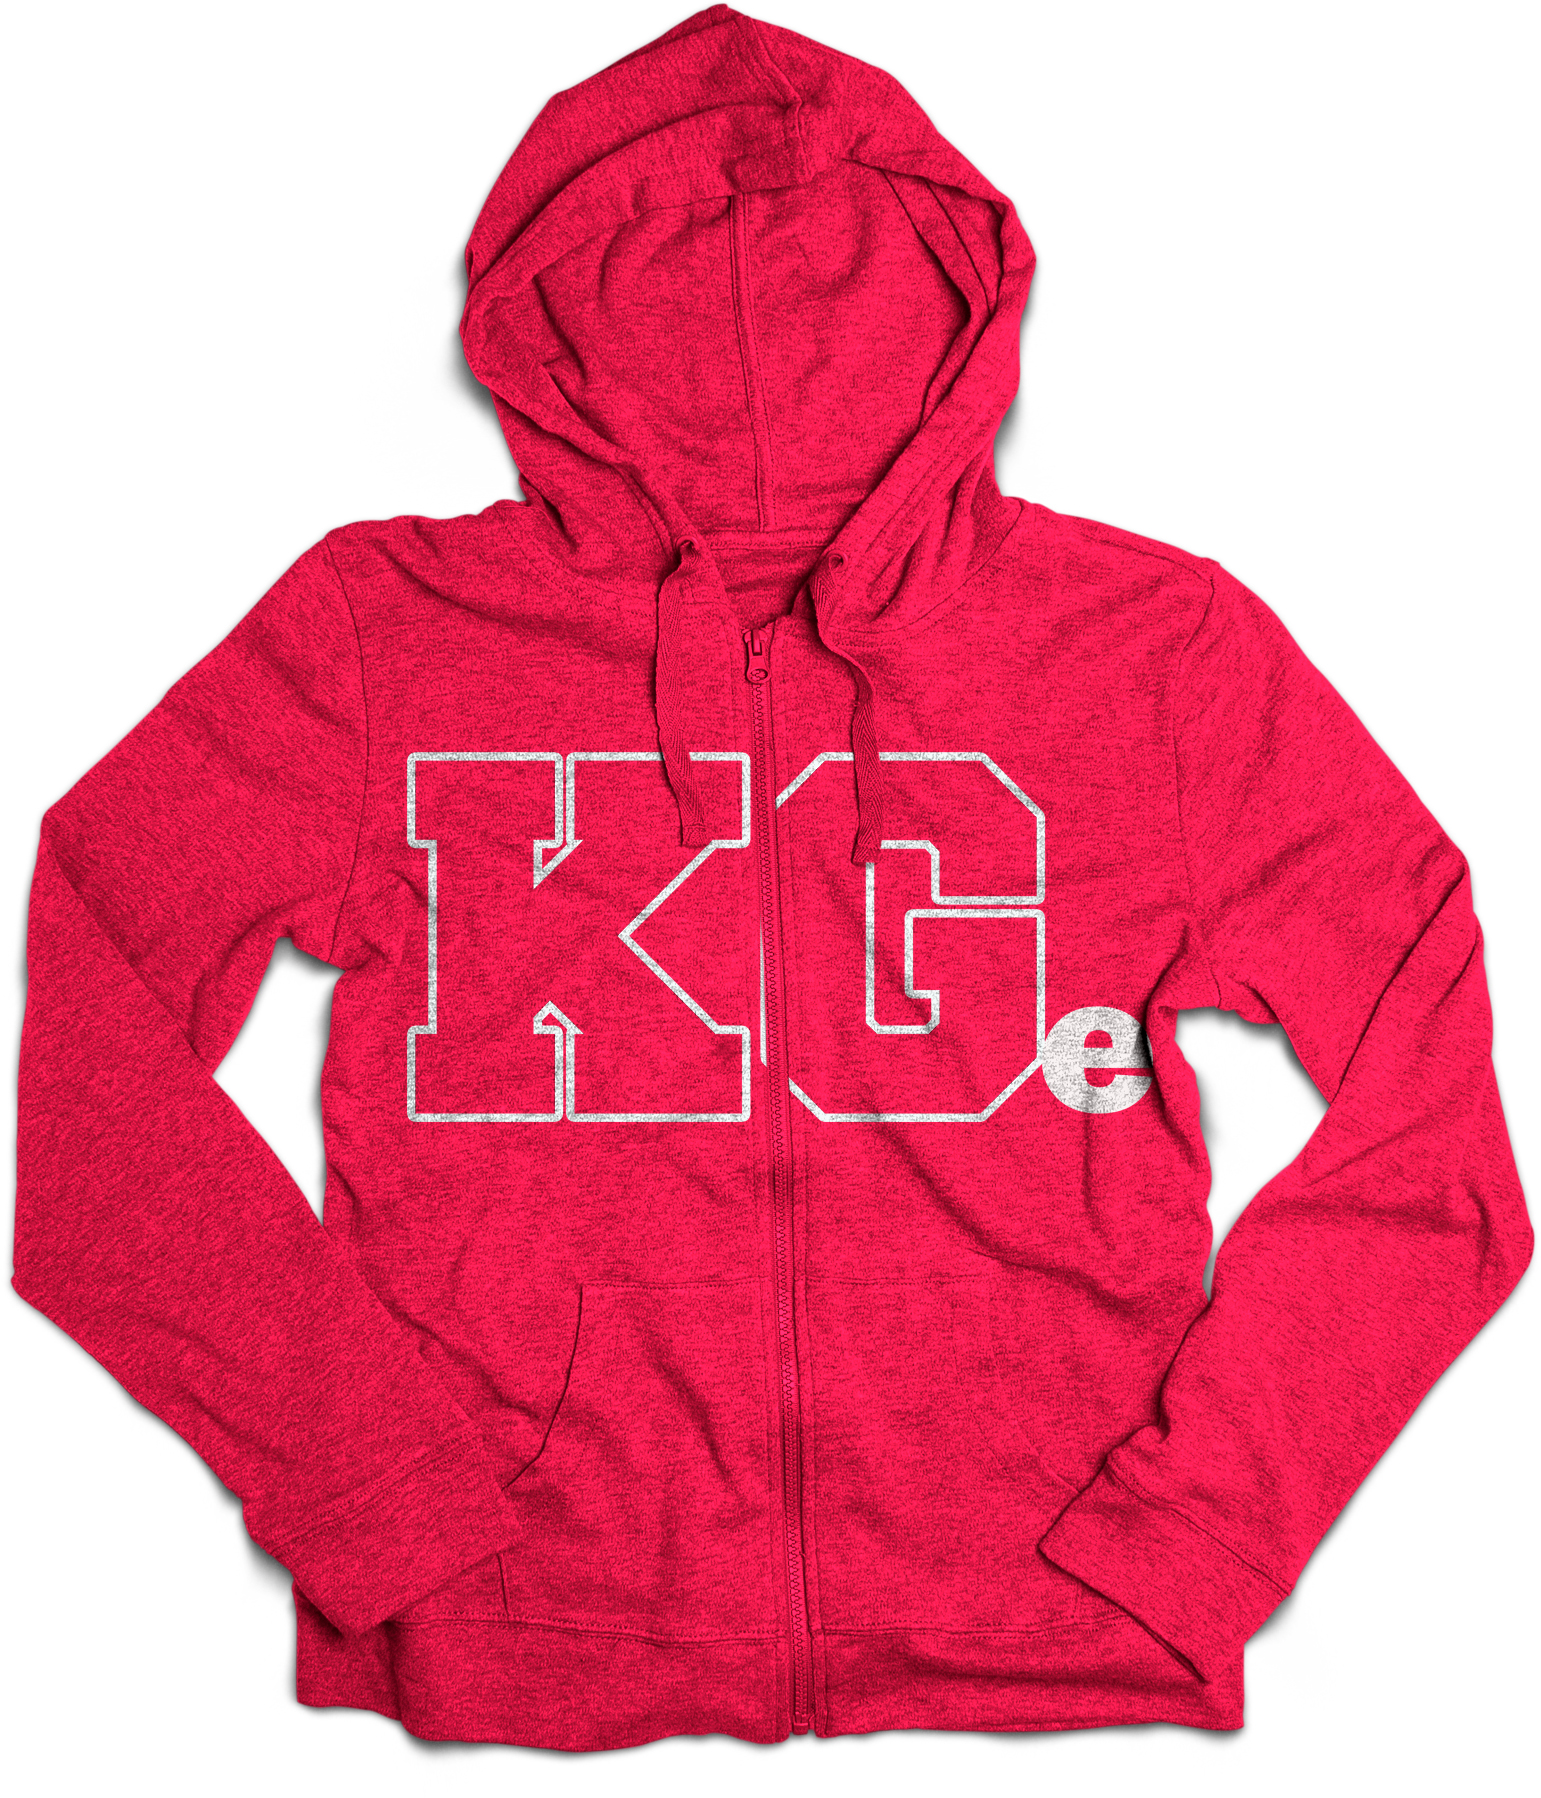 KG Pink Hooded Zip Sweatshirt